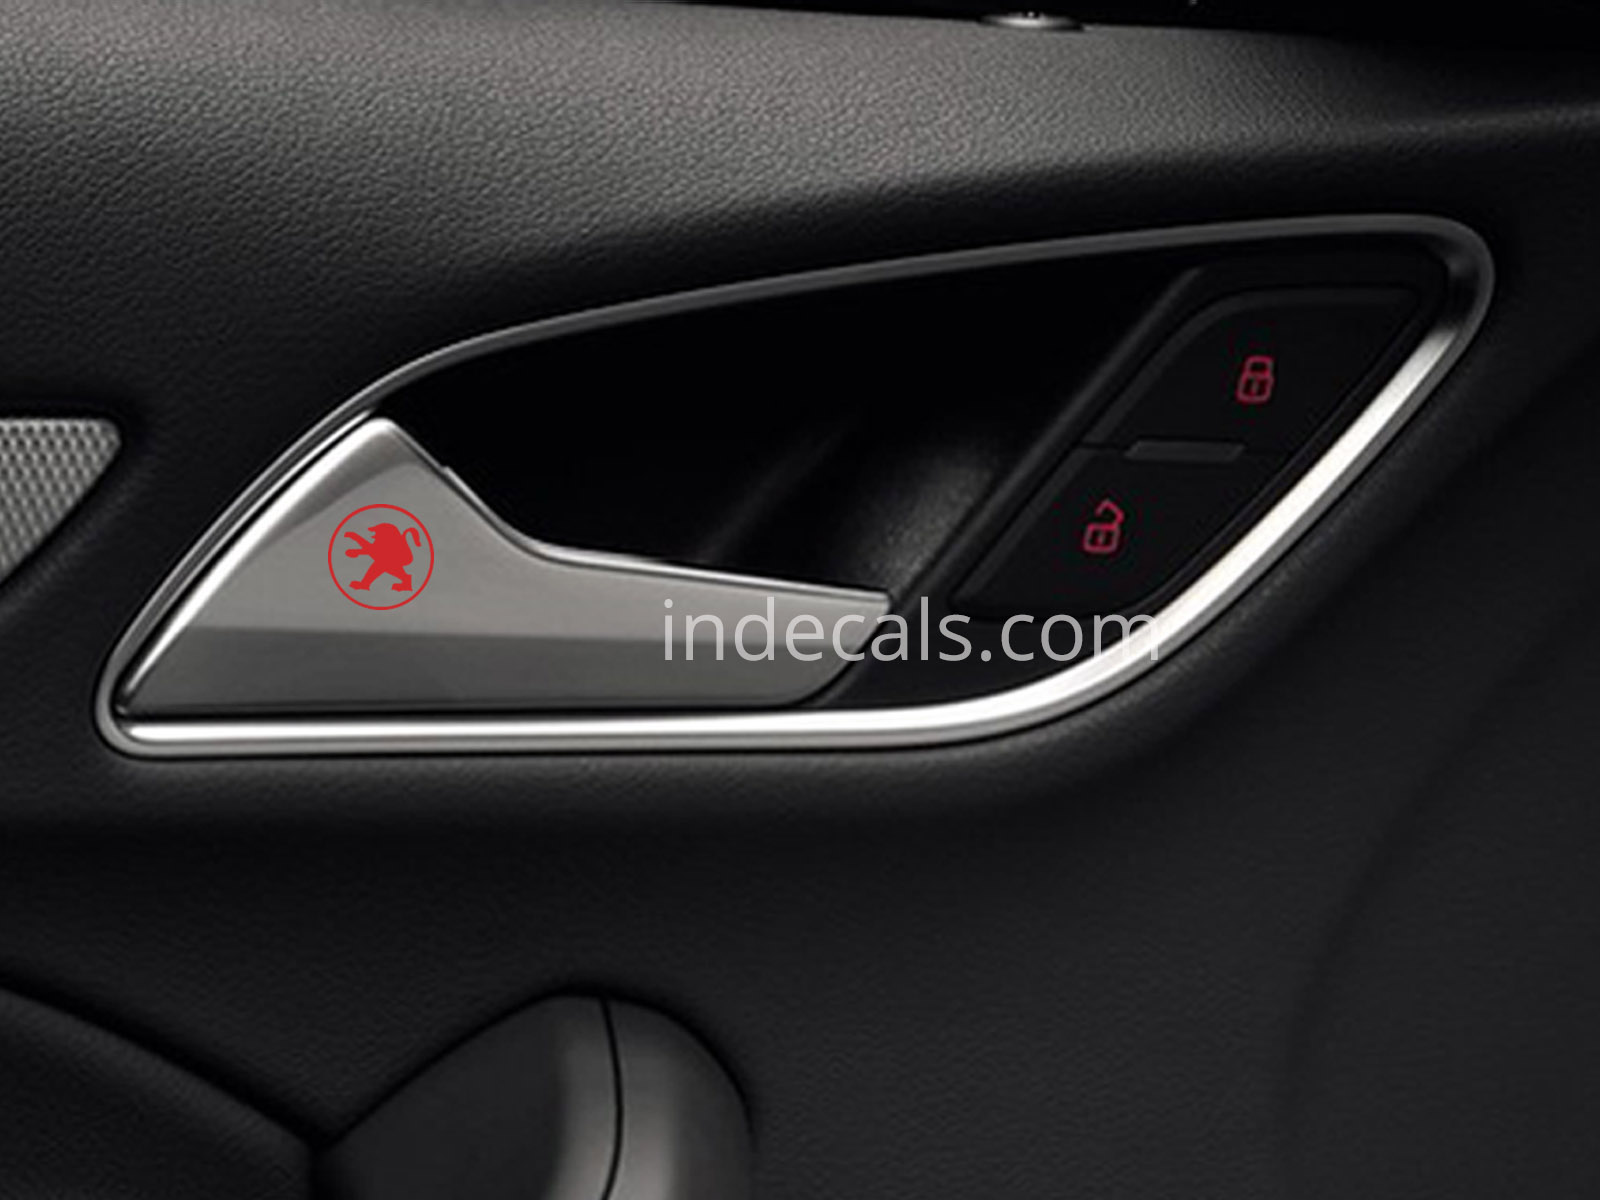 6 x Peugeot Stickers for Door Handle - Red